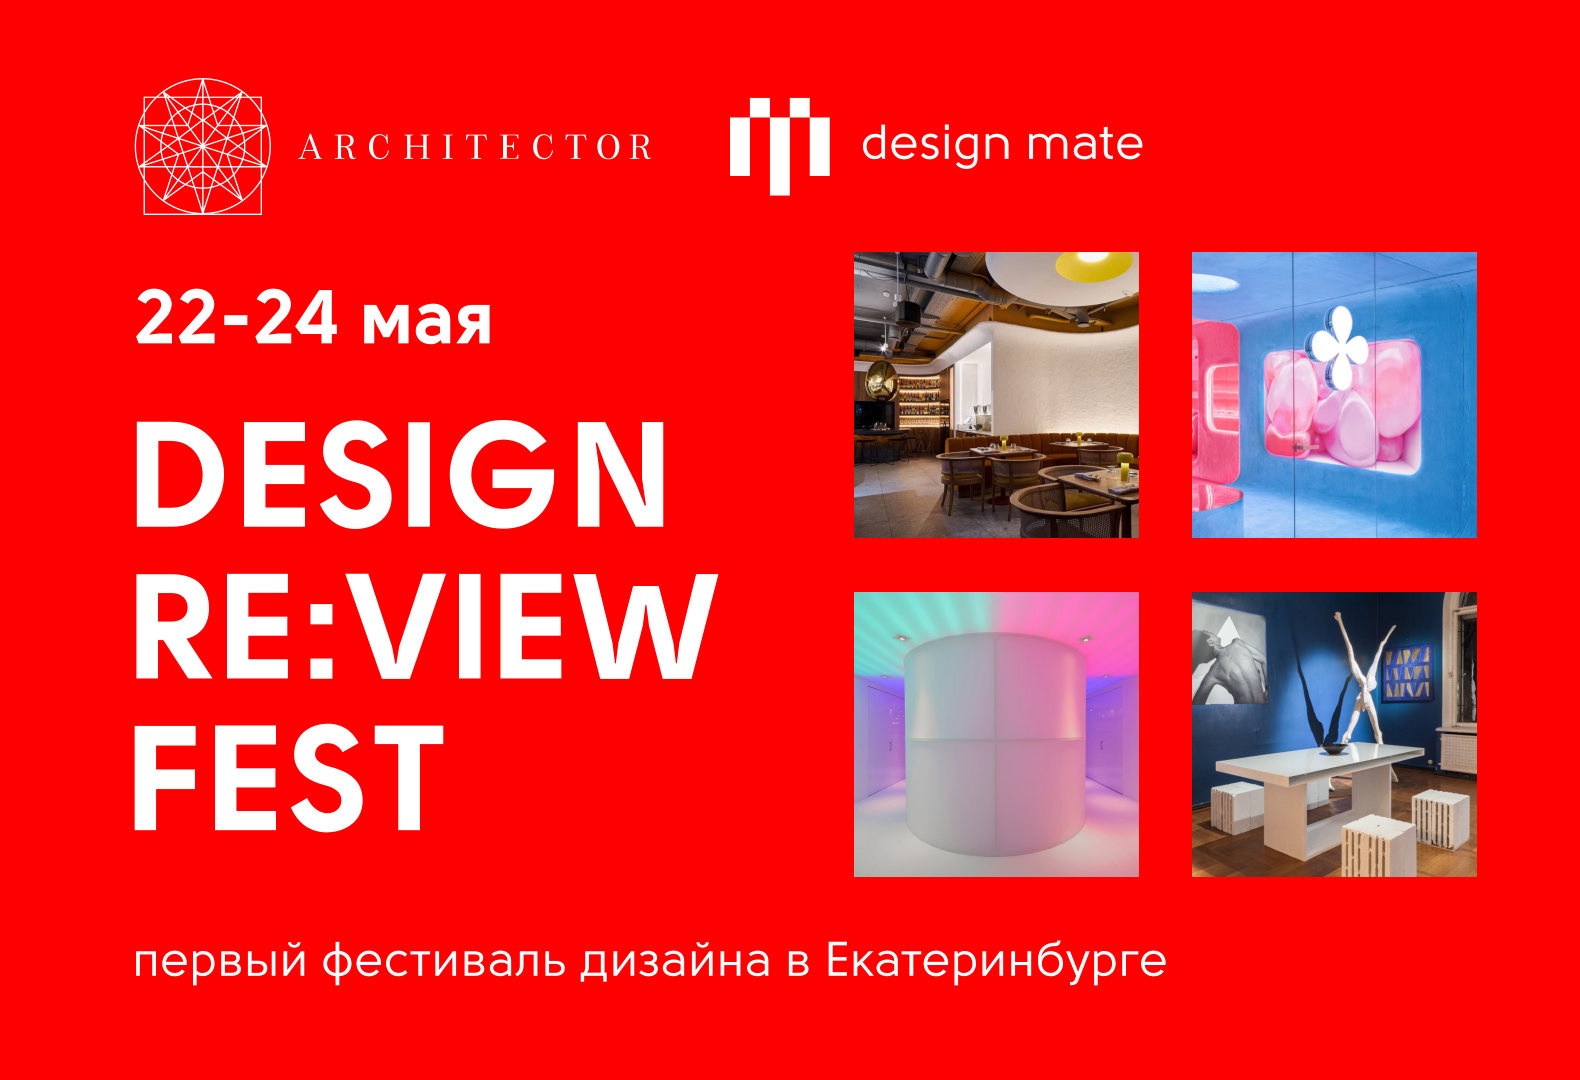 В Екатеринбурге впервые пройдет фестиваль дизайна Design Re:view FEST